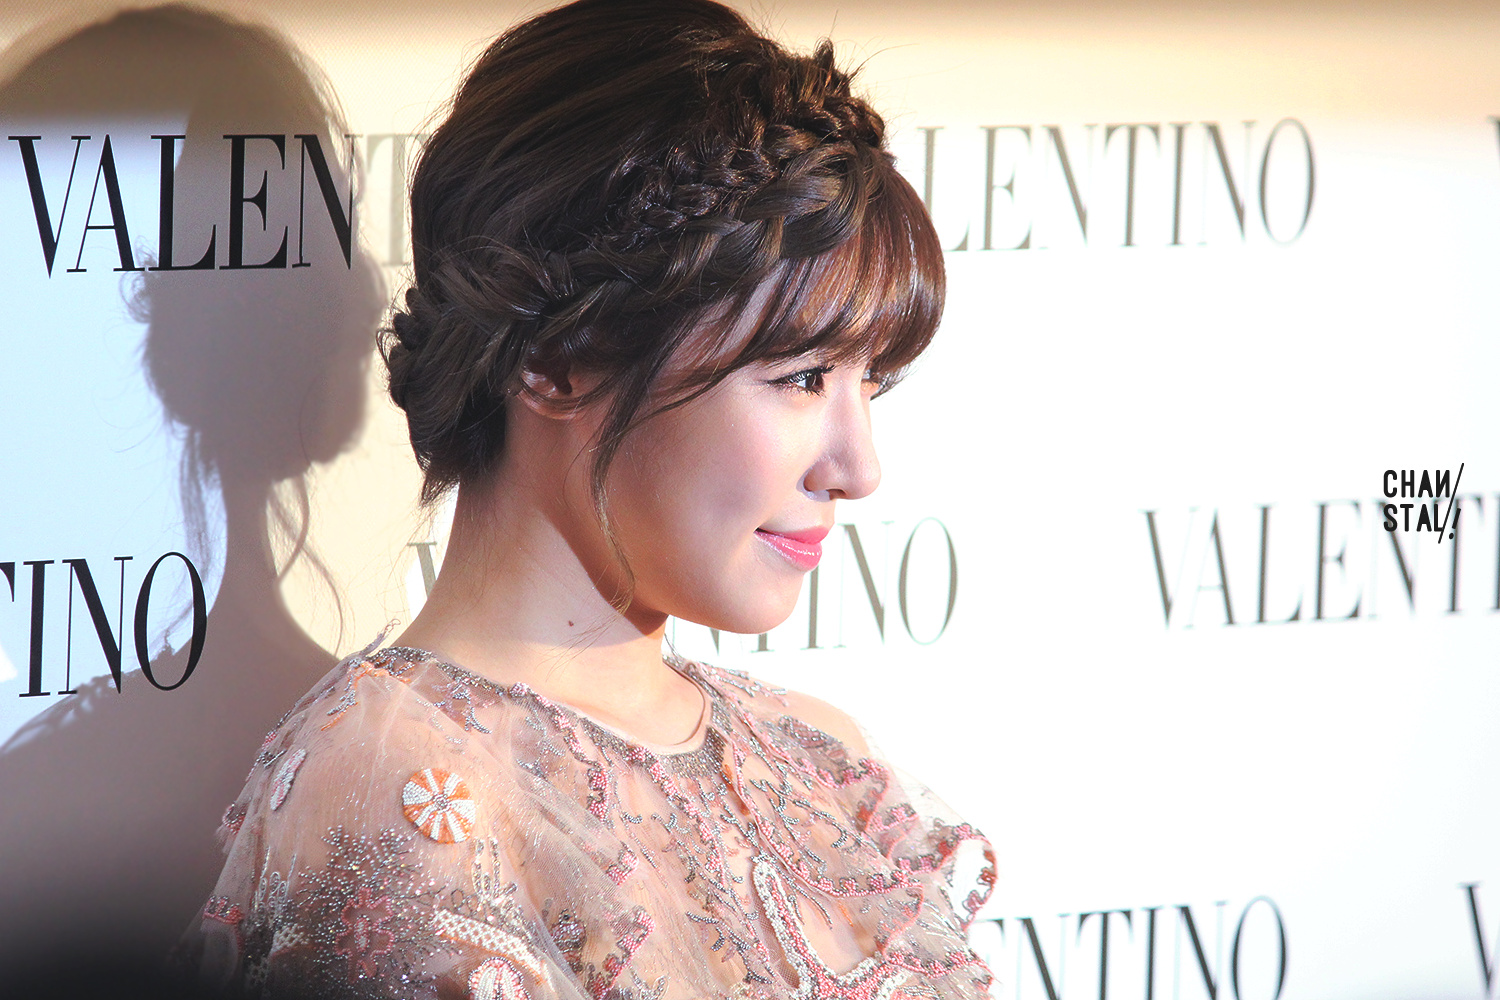 [PIC][04-02-2015]Tiffany khởi hành đi Hồng Kông để tham dự sự kện "Valentino Flagship Grand Opening" vào trưa nay - Page 3 87a21c72jw1eoytrd4ibtj215o0rsdvp